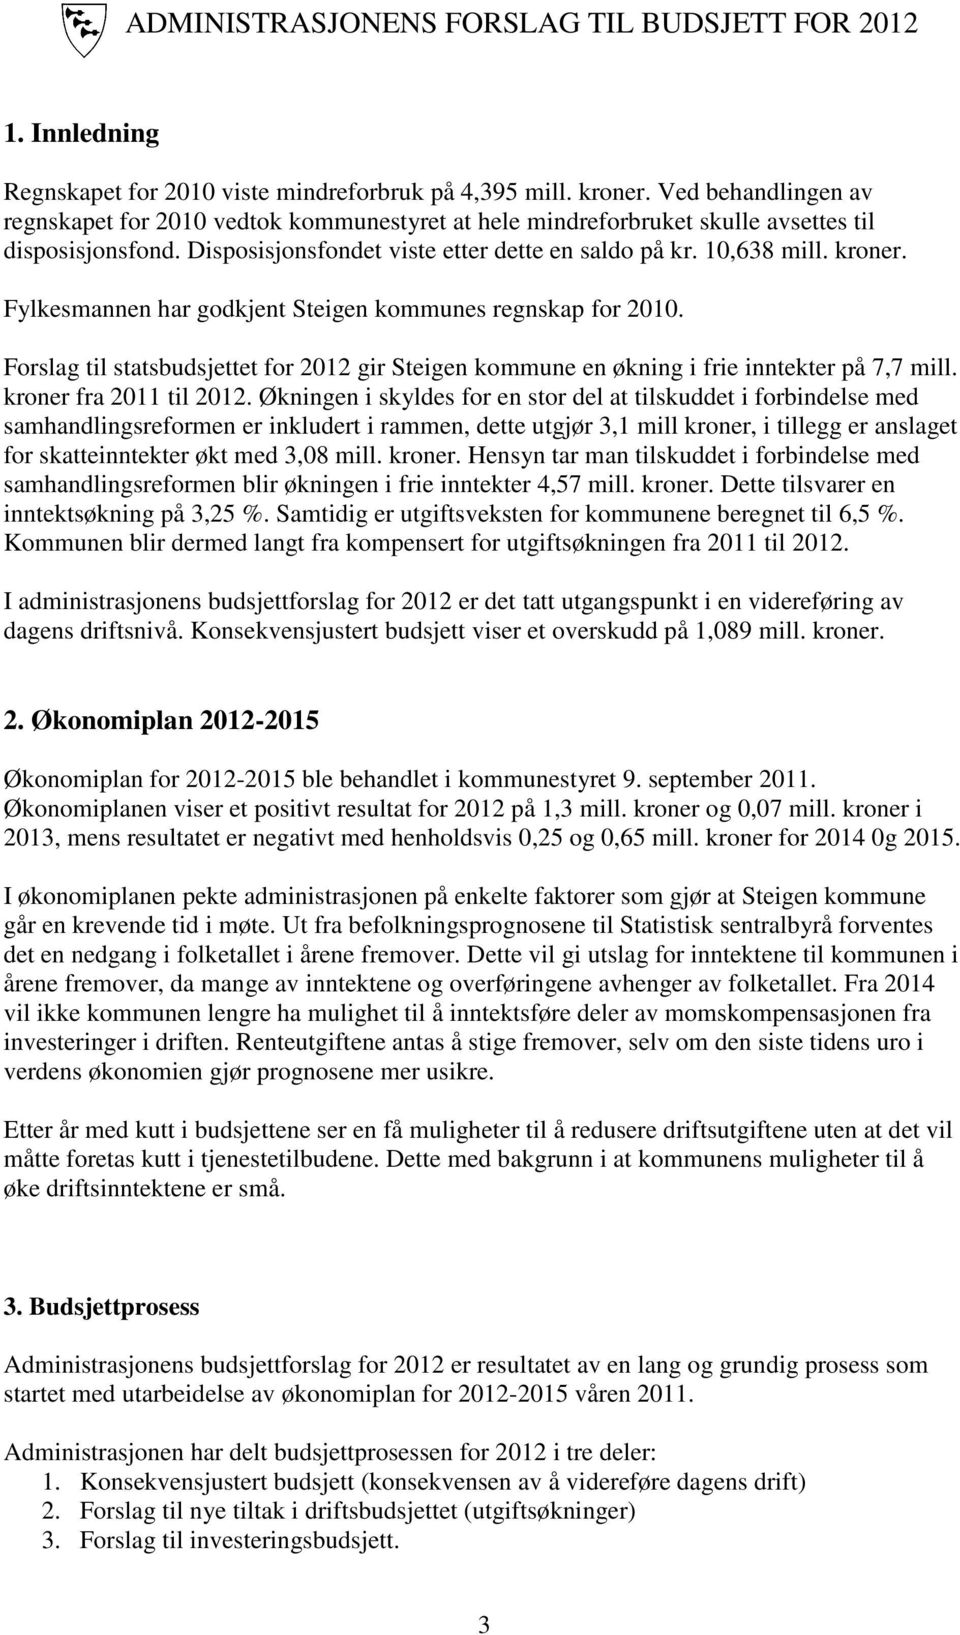 Forslag til statsbudsjettet for 2012 gir Steigen kommune en økning i frie inntekter på 7,7 mill. kroner fra 2011 til 2012.